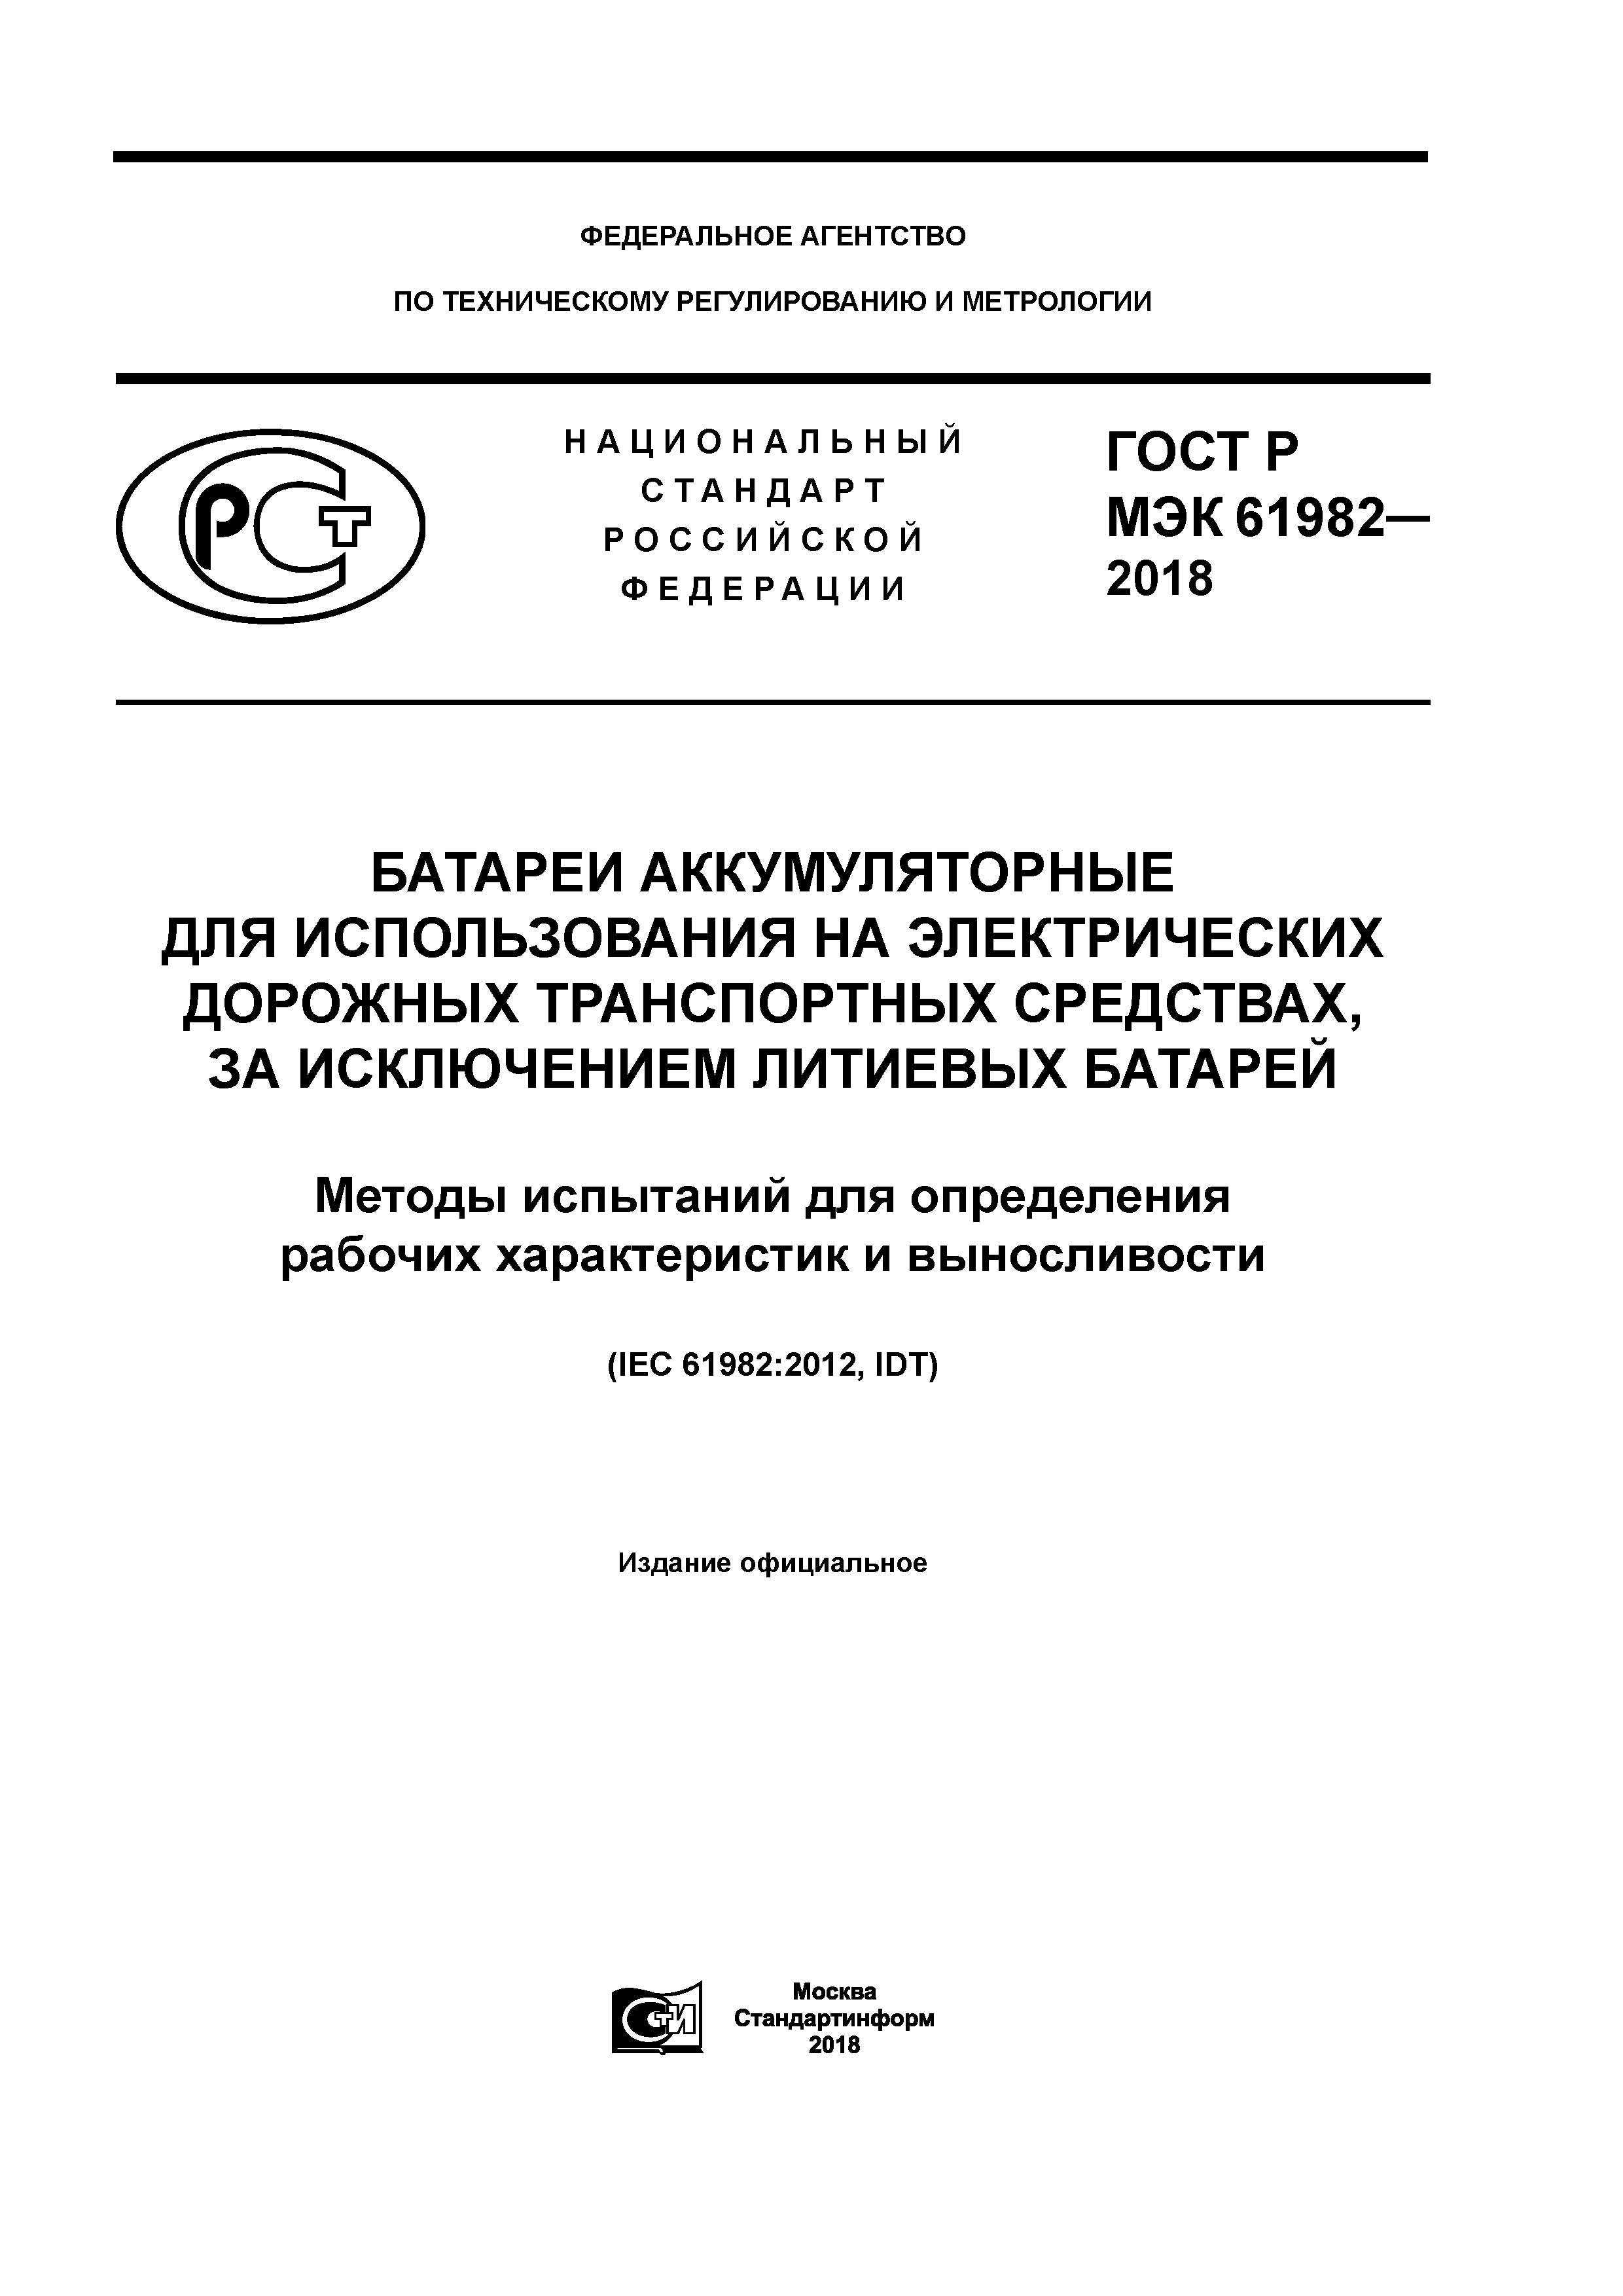 ГОСТ Р МЭК 61982-2018